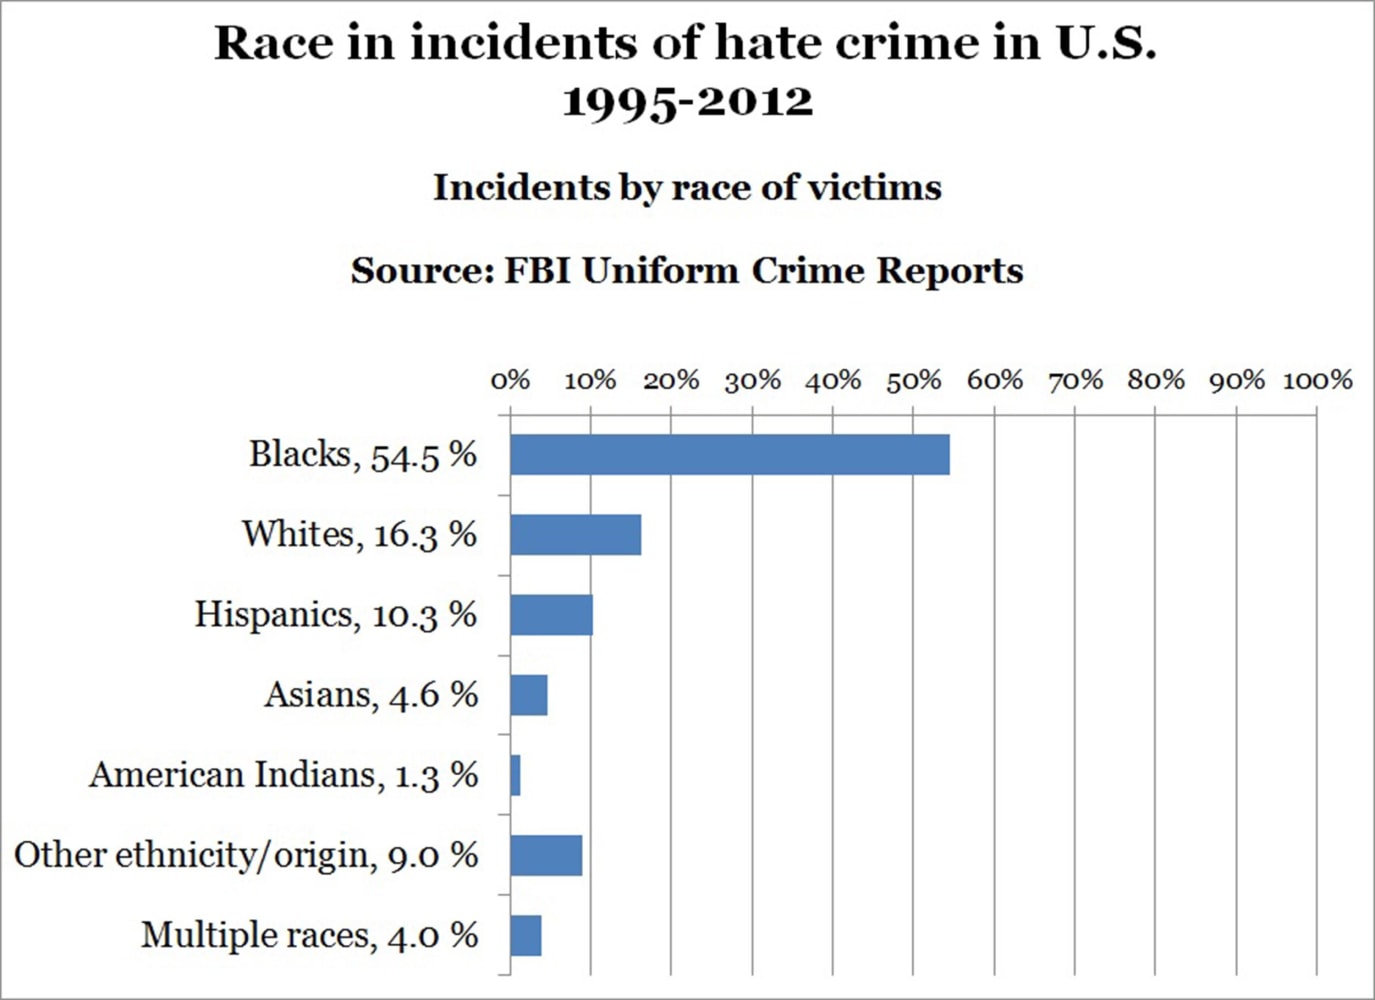 http://media4.s-nbcnews.com/j/newscms/2014_16/326421/140415-hate-crimes-by-race-2259_8f2eb71bfa345ac0669fad850cfd4b8d.nbcnews-ux-2880-1000.jpg